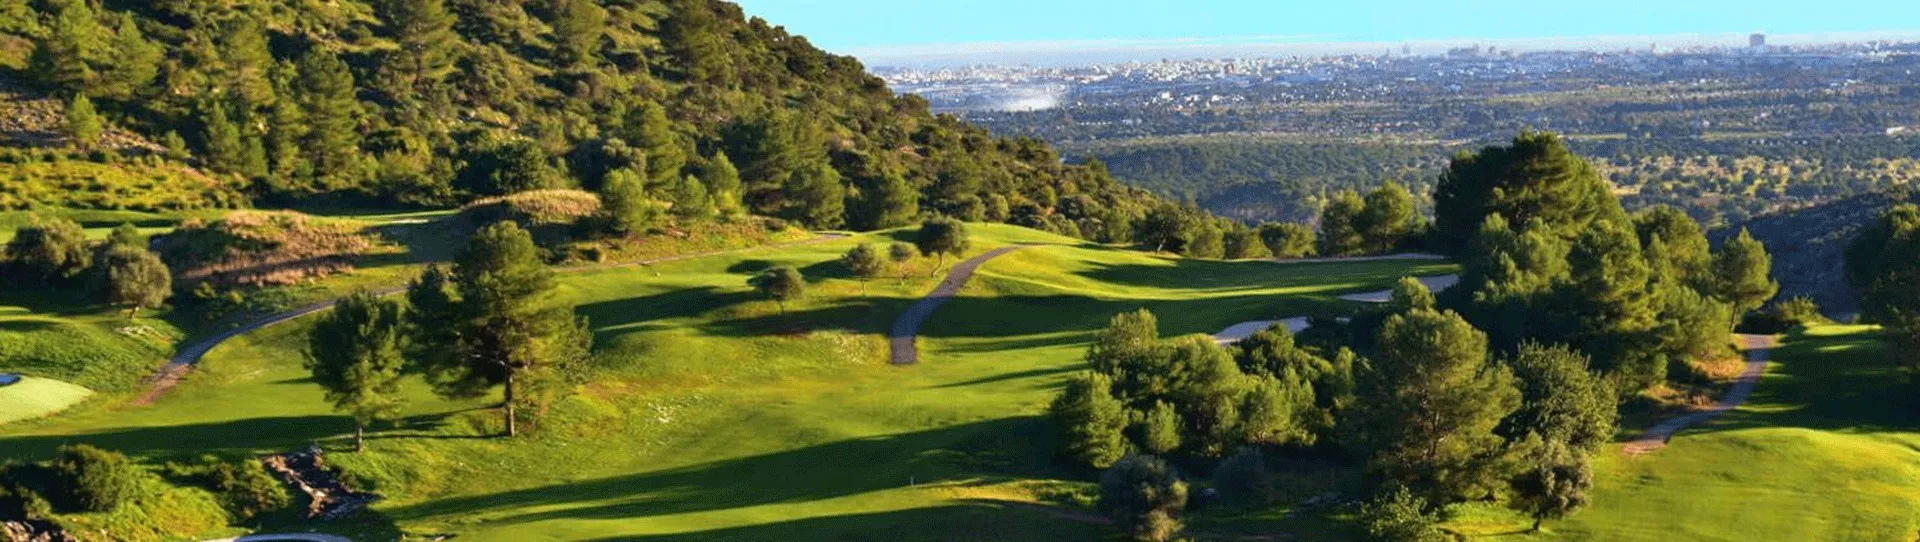 Spain golf courses - Son Termes Golf Course - Photo 1